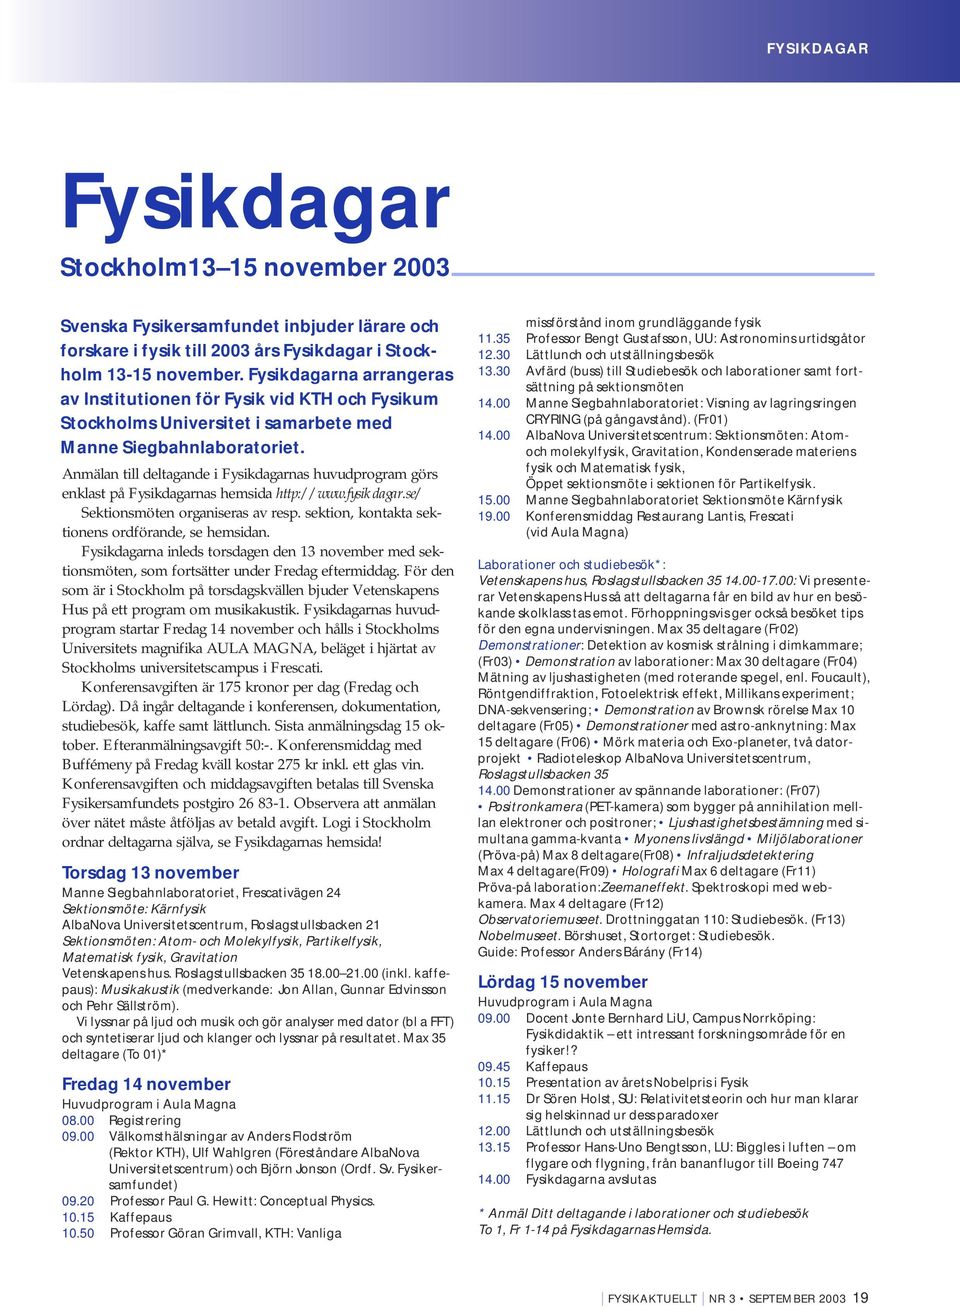 Anmälan till deltagande i Fysikdagarnas huvudprogram görs enklast på Fysikdagarnas hemsida http://www.fysikdagar.se/ Sektionsmöten organiseras av resp.